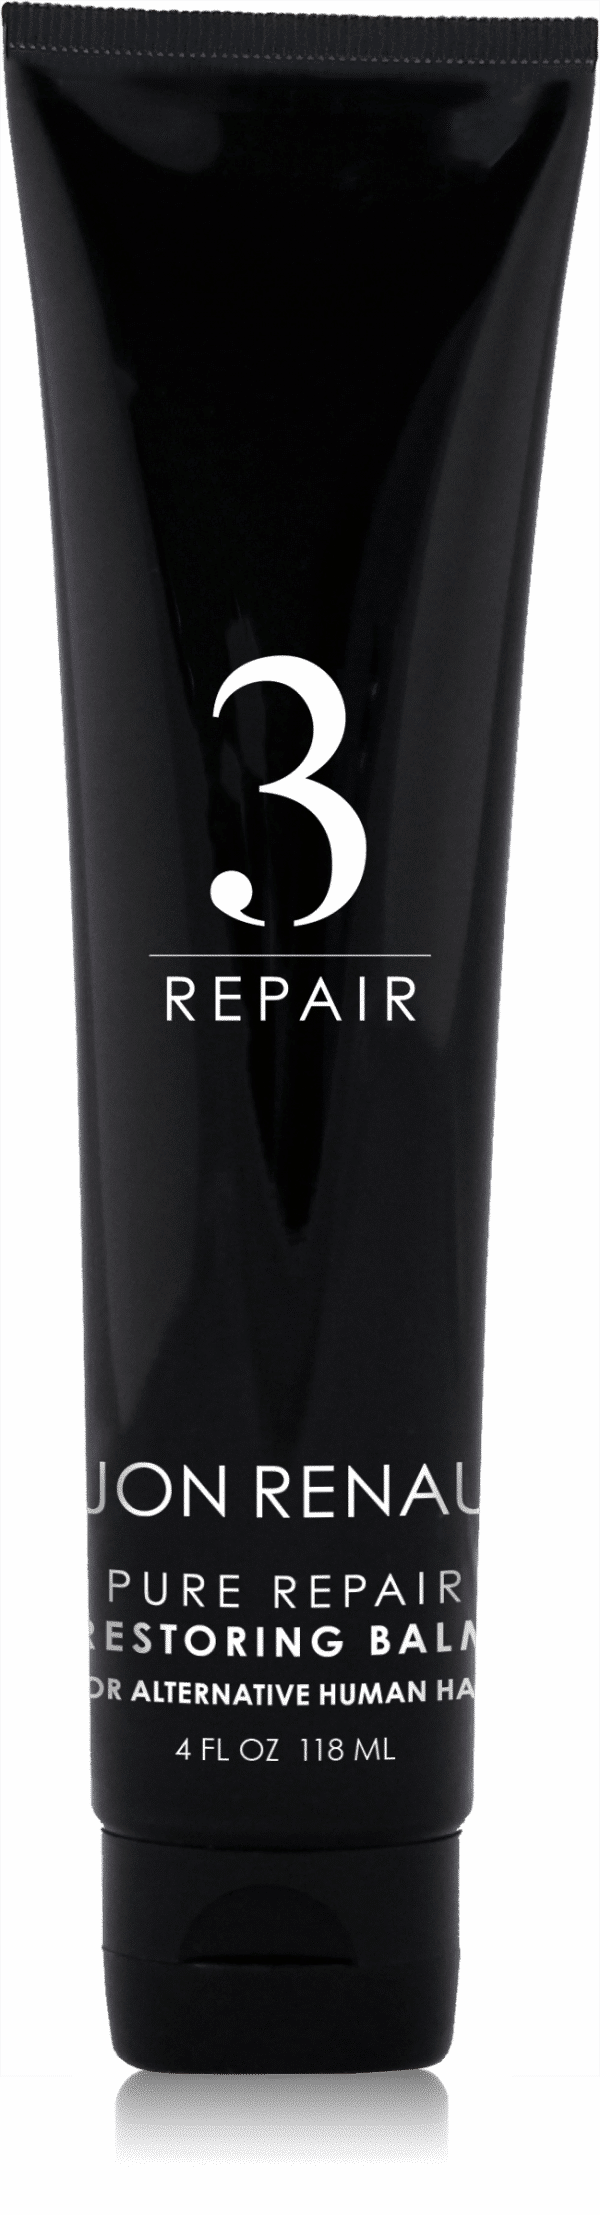 Pure repair Restoring Balm